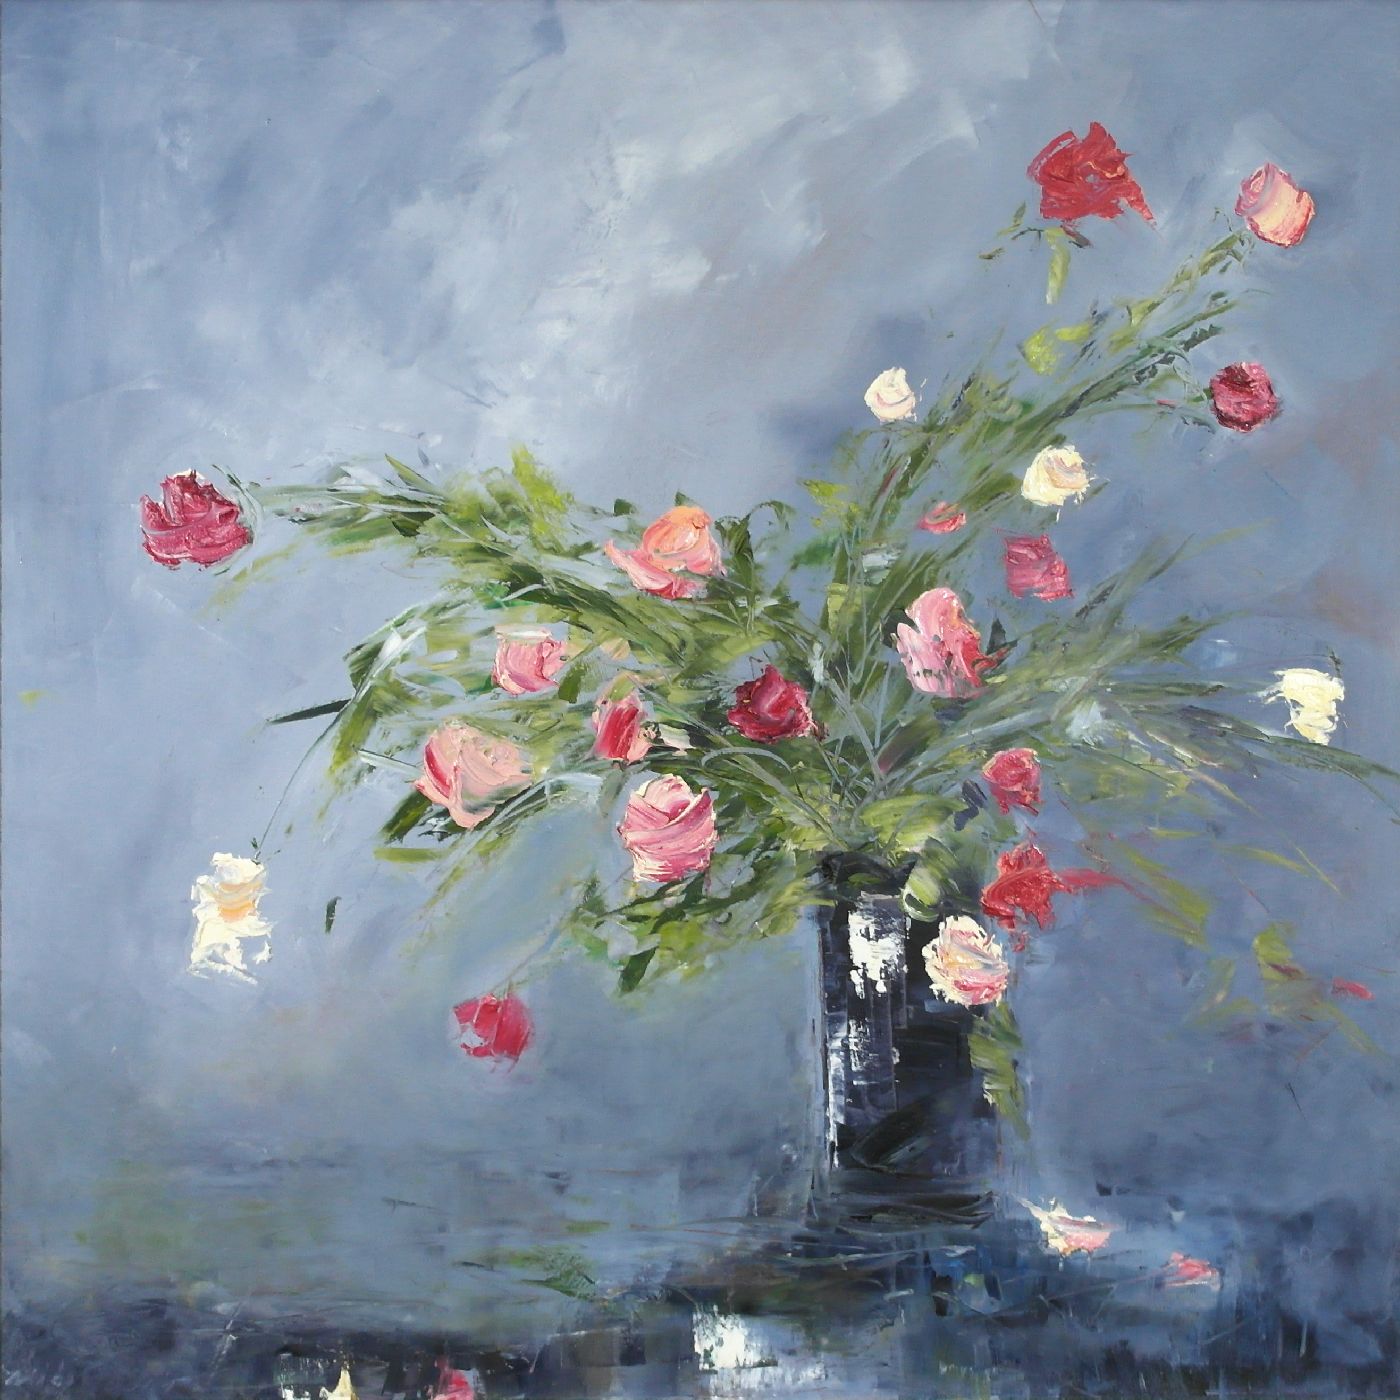 Black Jar and Roses by Libbi Gooch